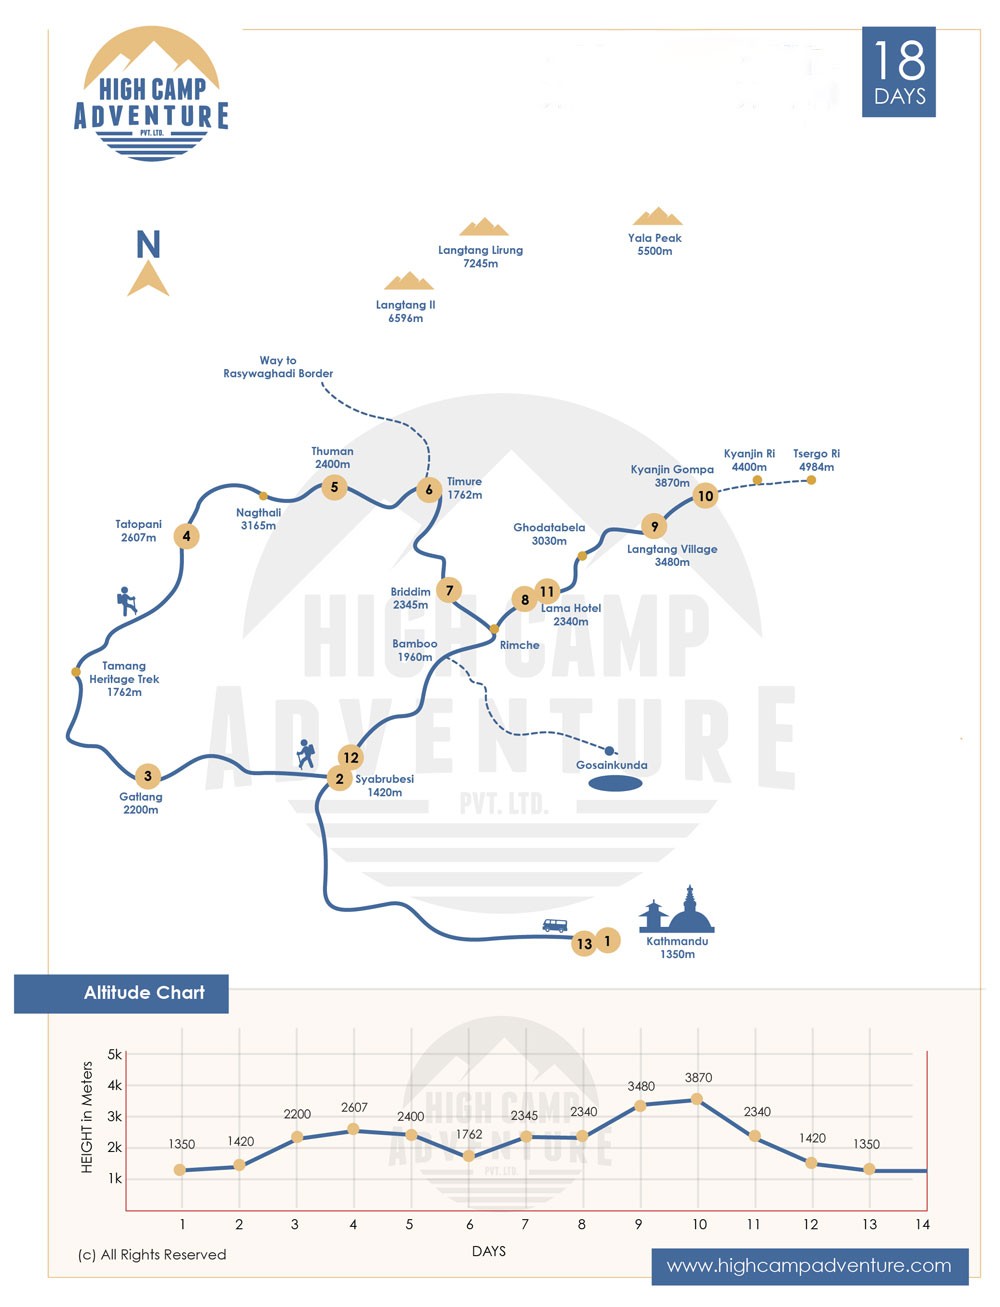 Tamang Heritage Langtang Valley Trek map